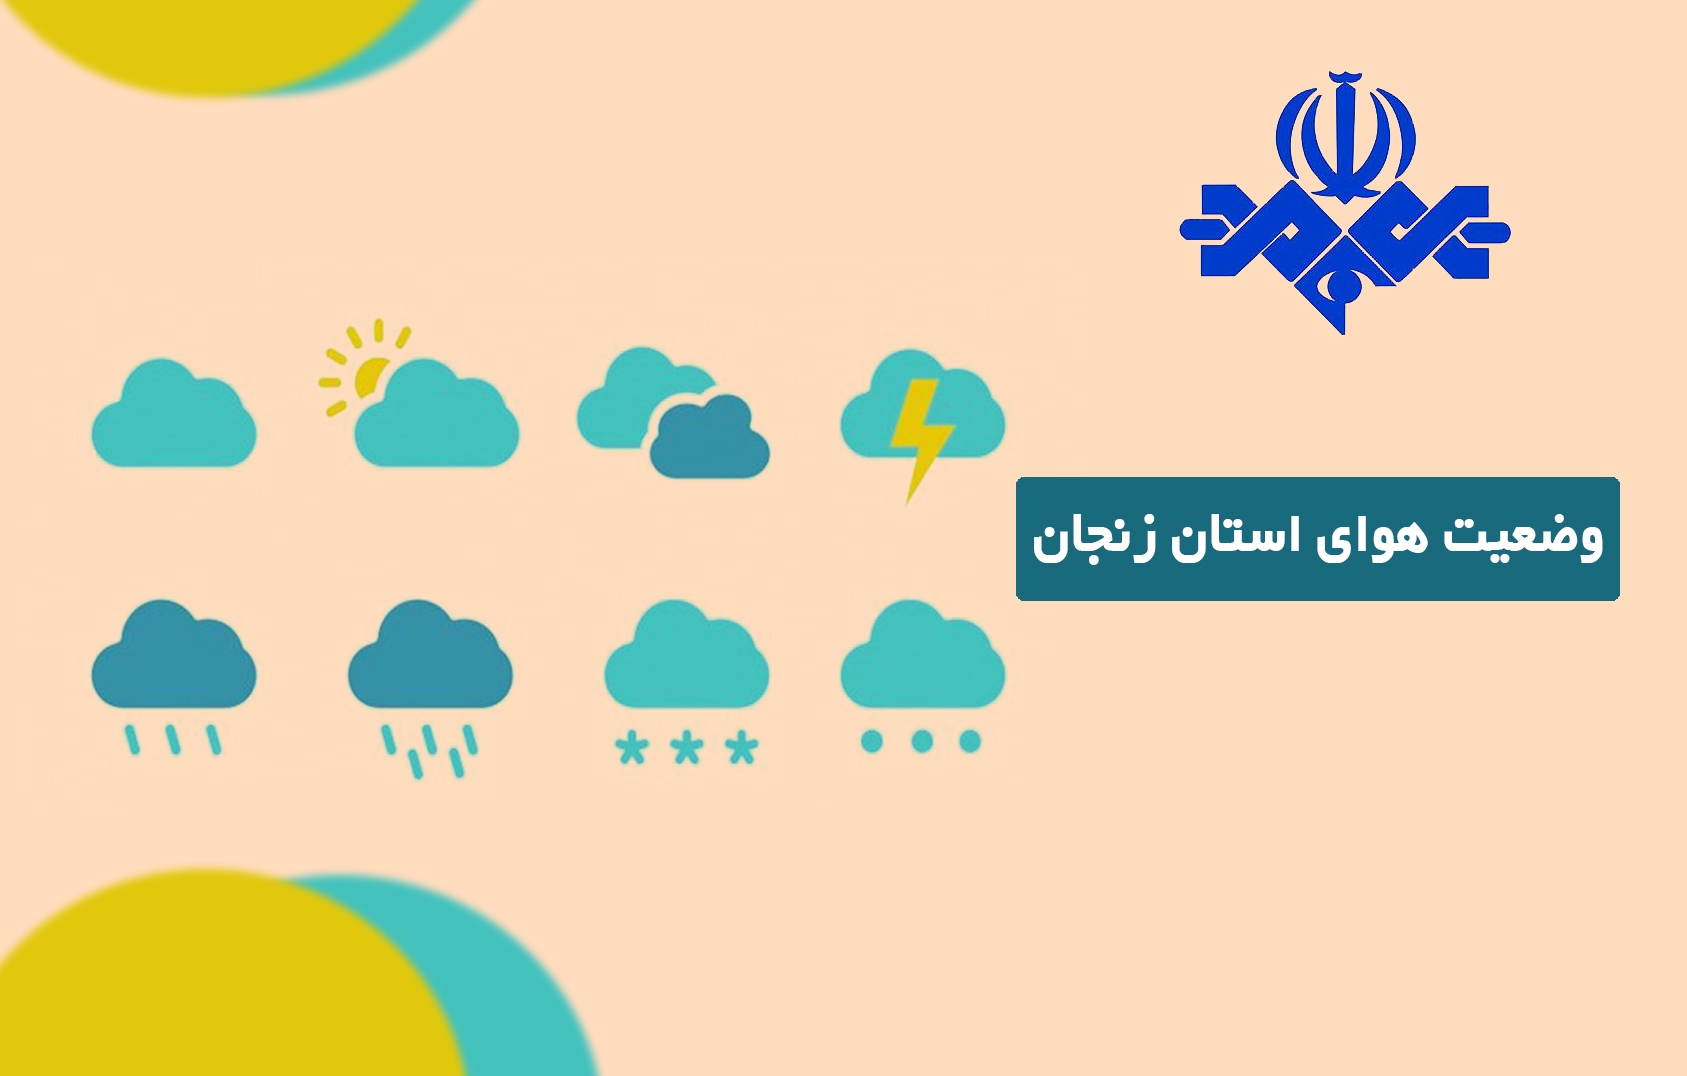 هوای بادی و بارانی پاییزی زنجان